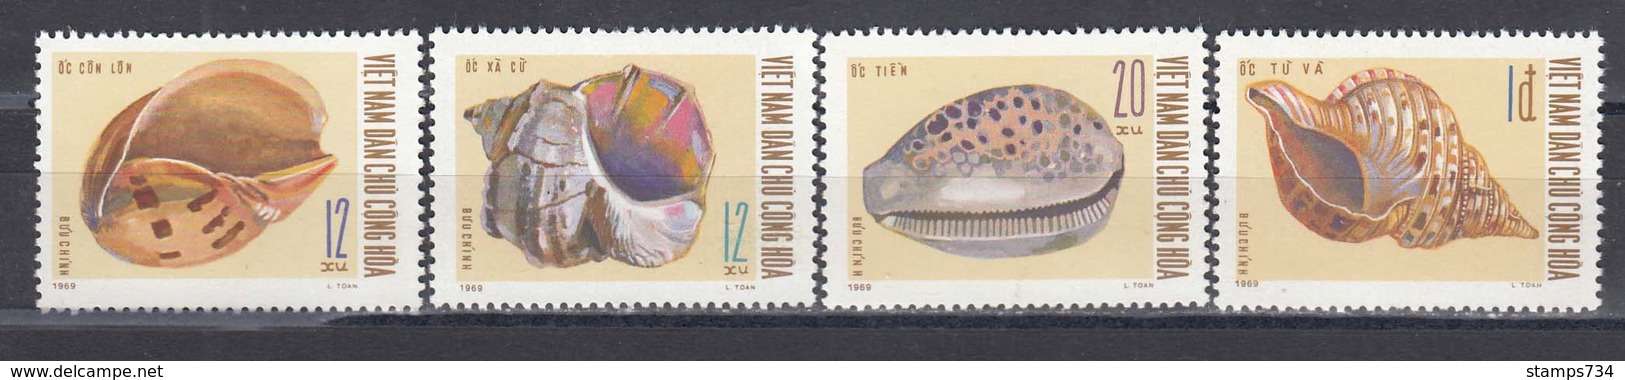 Vietnam Nord 1970 - Shells, Mi-Nr. 610/13, Perforated, MNH** - Vietnam